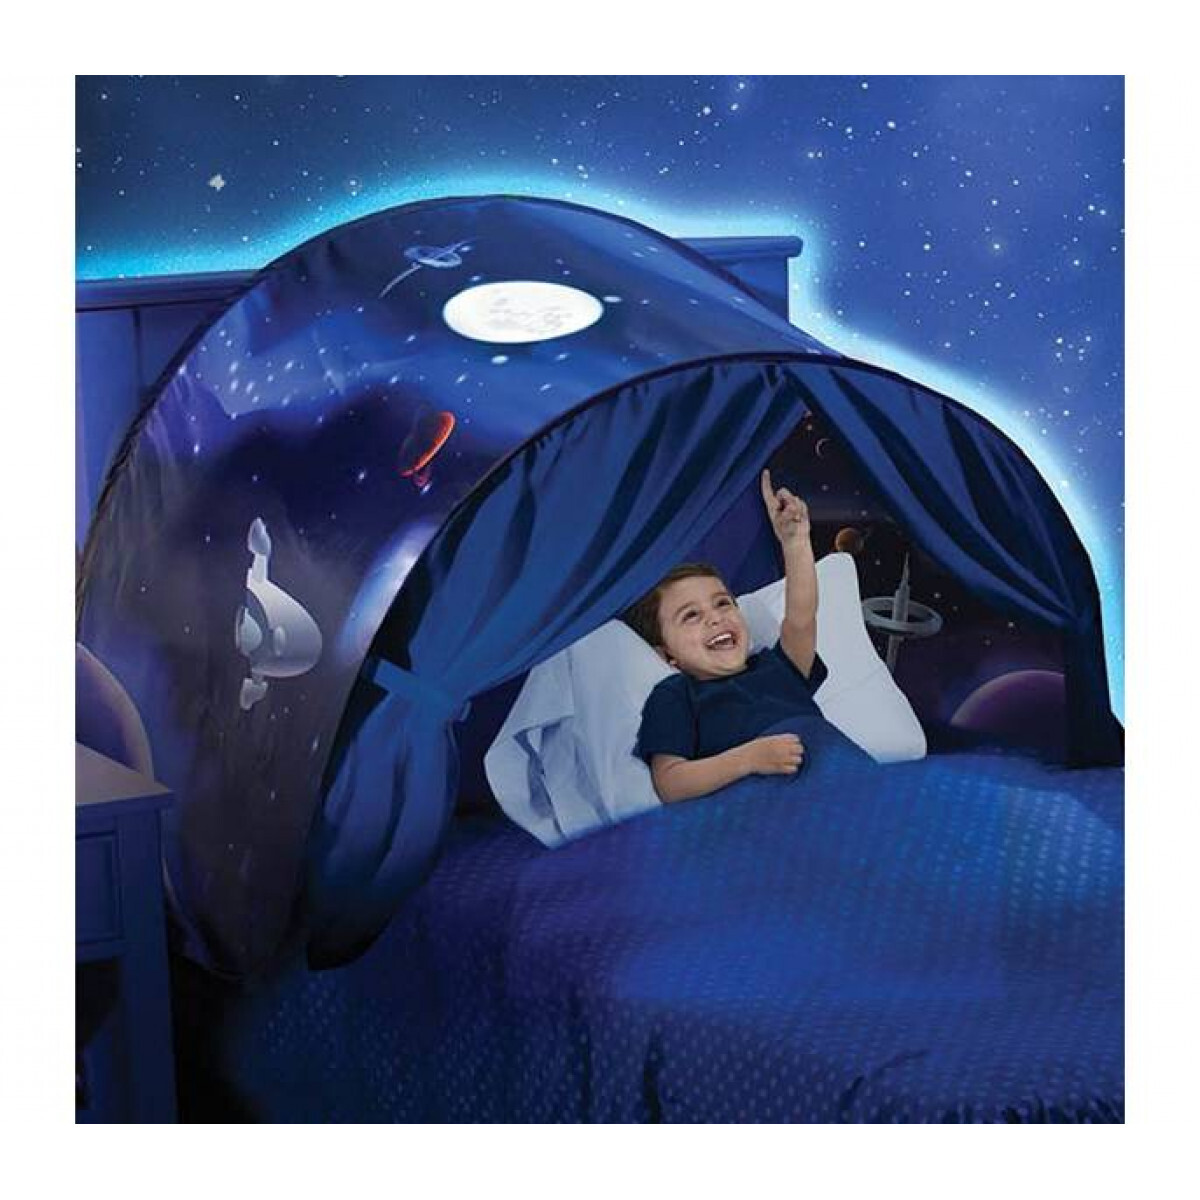 Палатка Dream Tents мечты